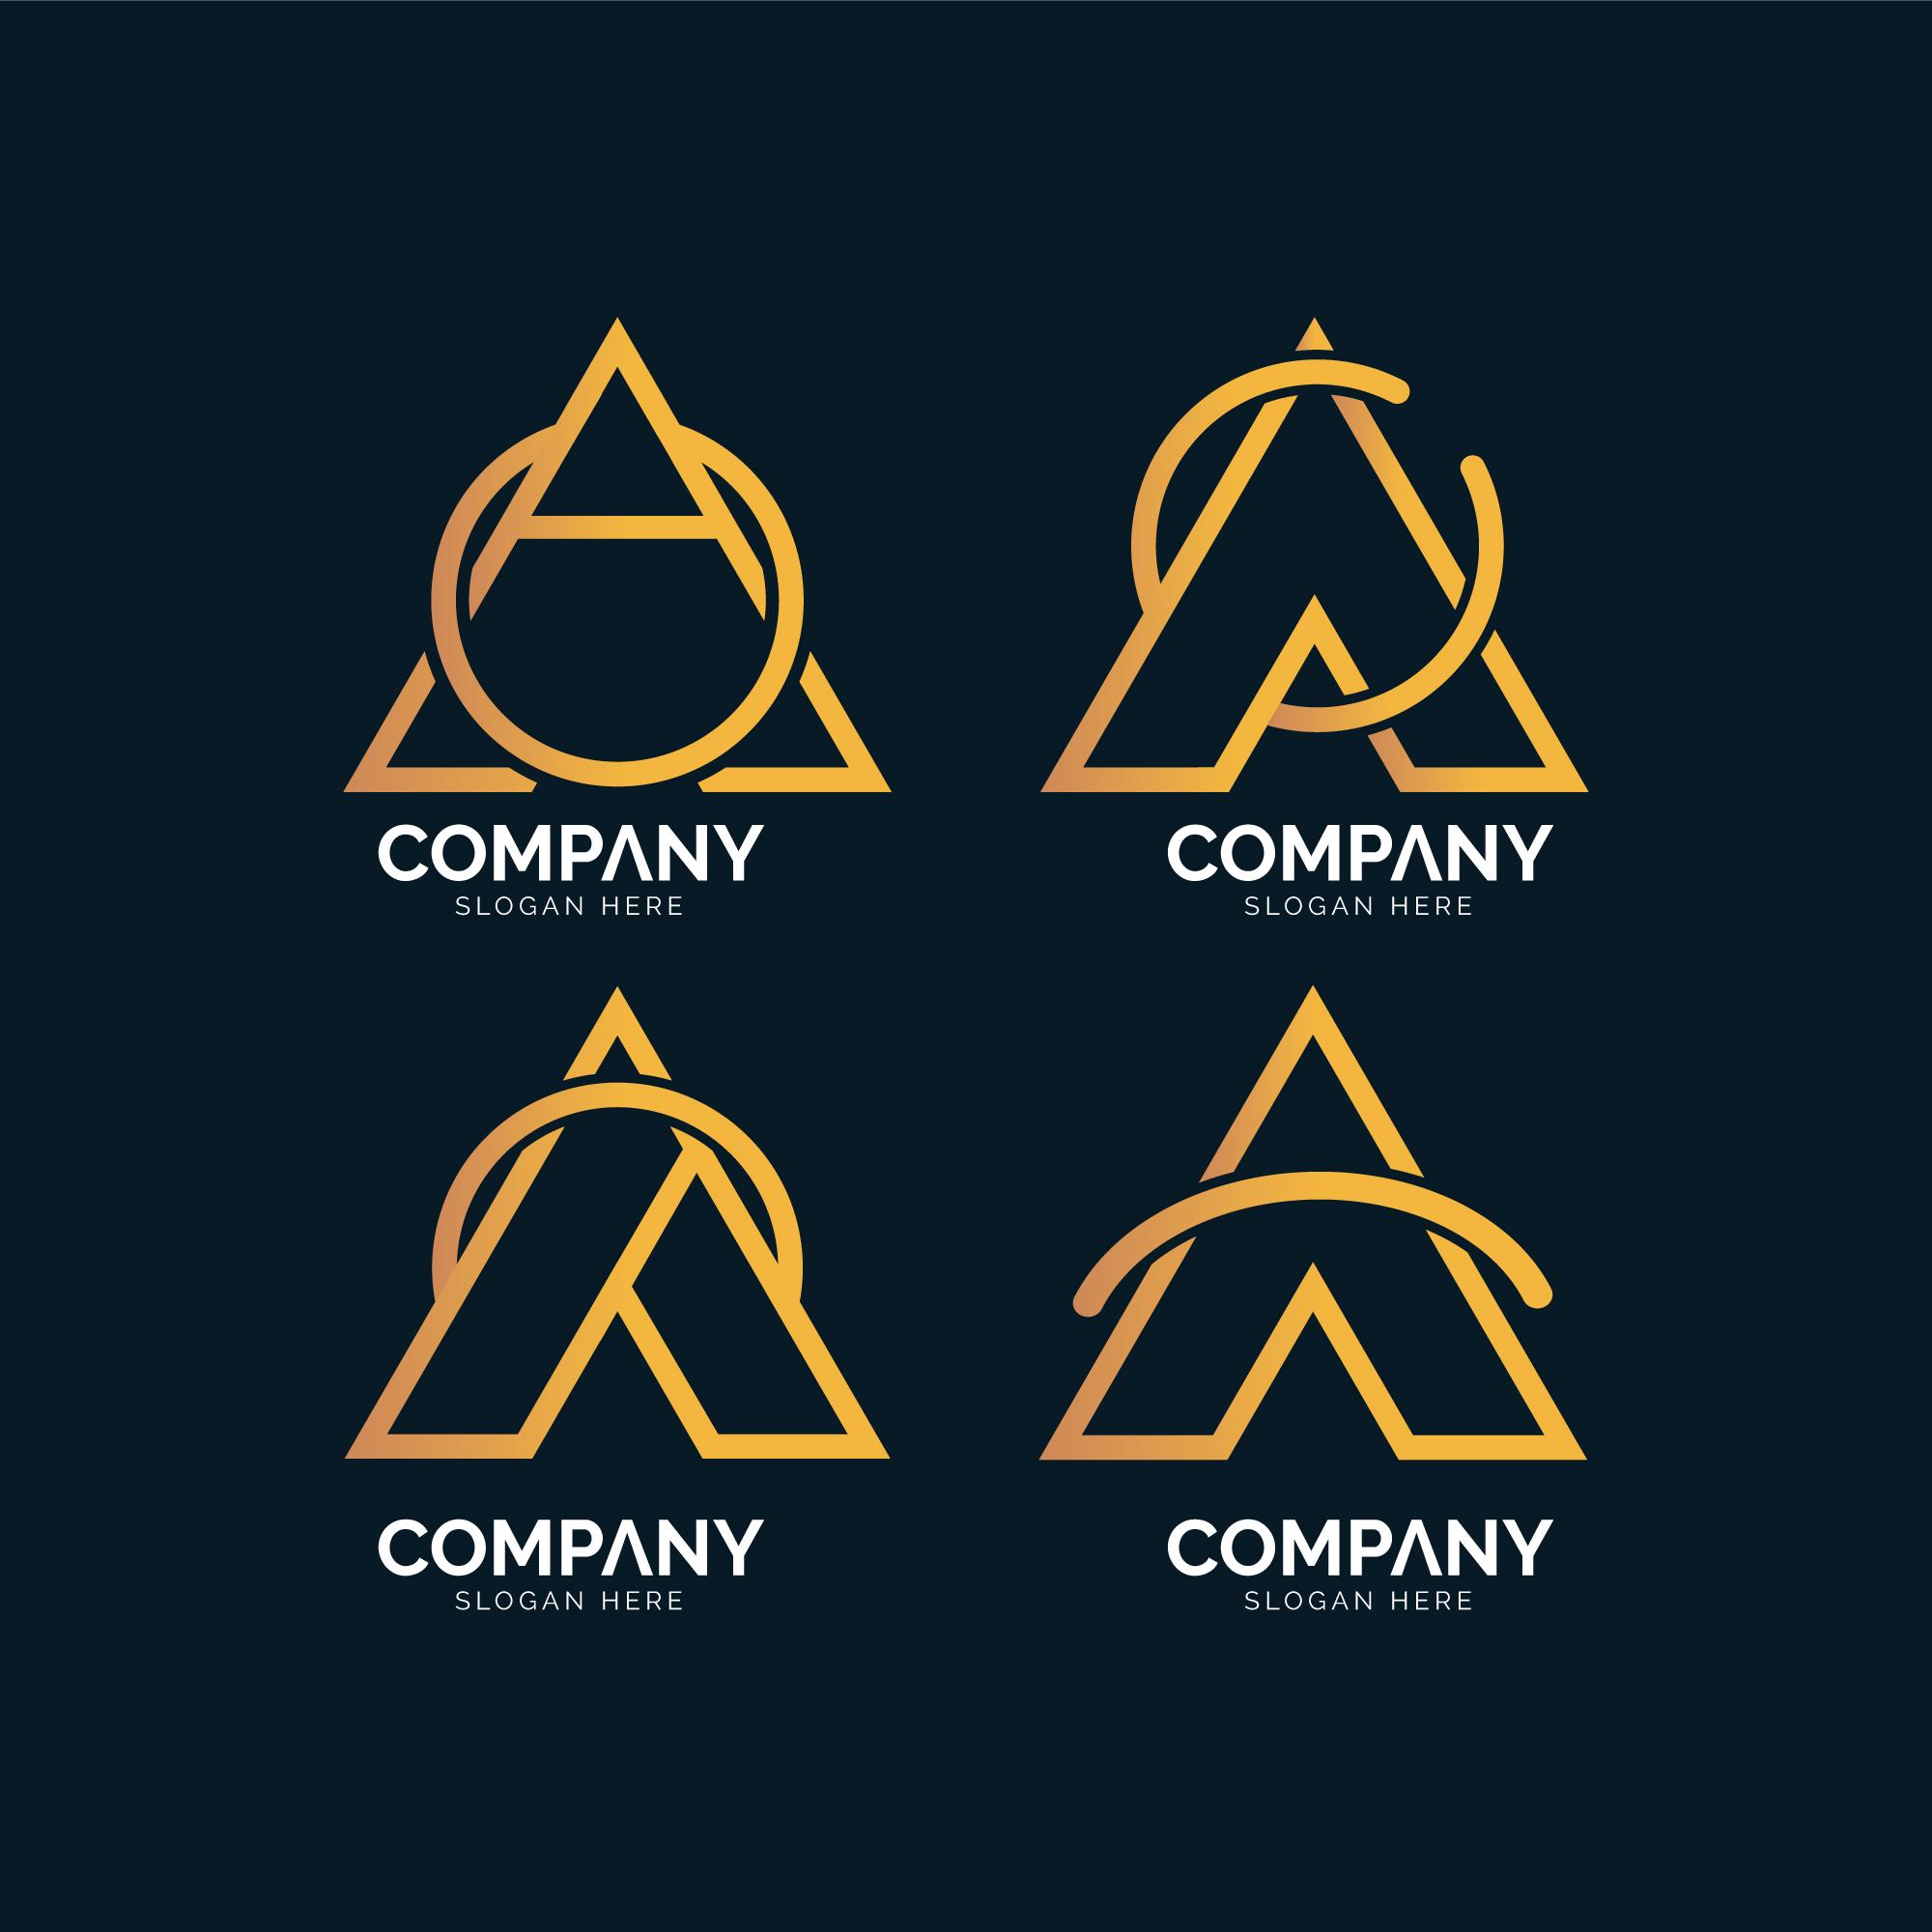 Logo chữ A thiết kế cùng chữ C